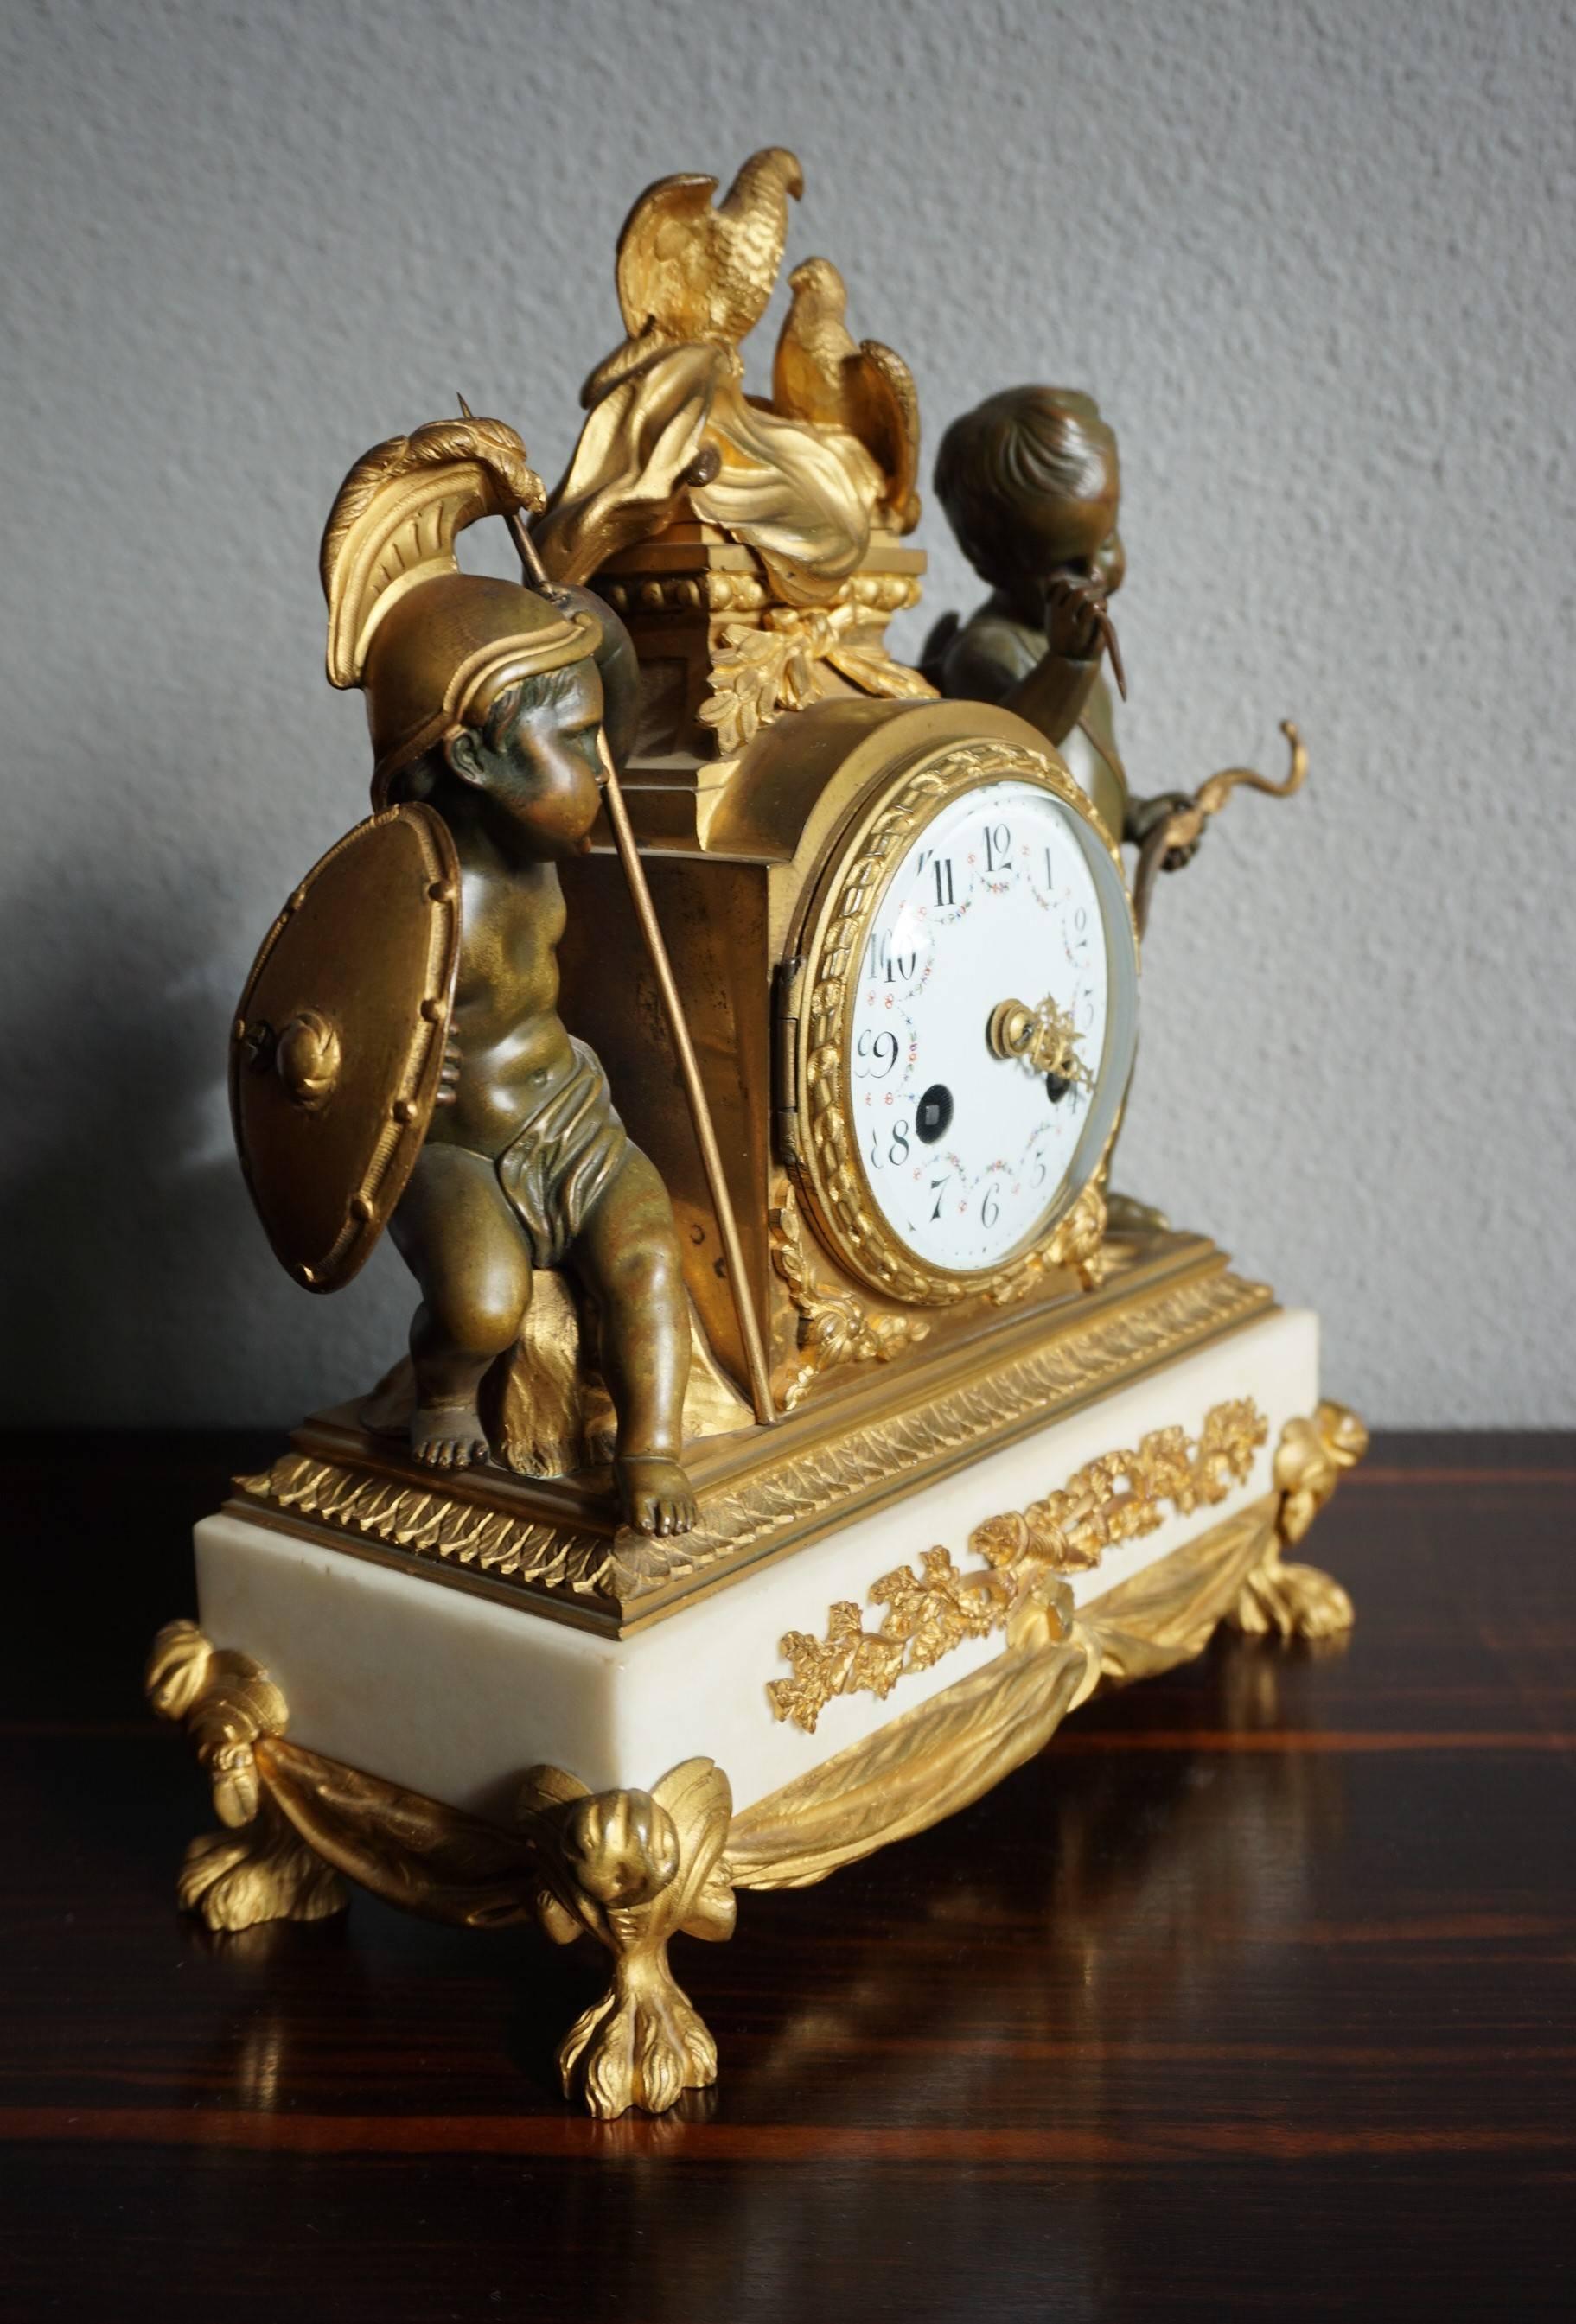 Superbe horloge de cheminée de style Transition française datant des années 1850.

Cette merveilleuse et significative horloge de cheminée parisienne est une rare édition du XIXe siècle d'un dessin du XVIIIe siècle de Charles Le Roy. Il n'y a que